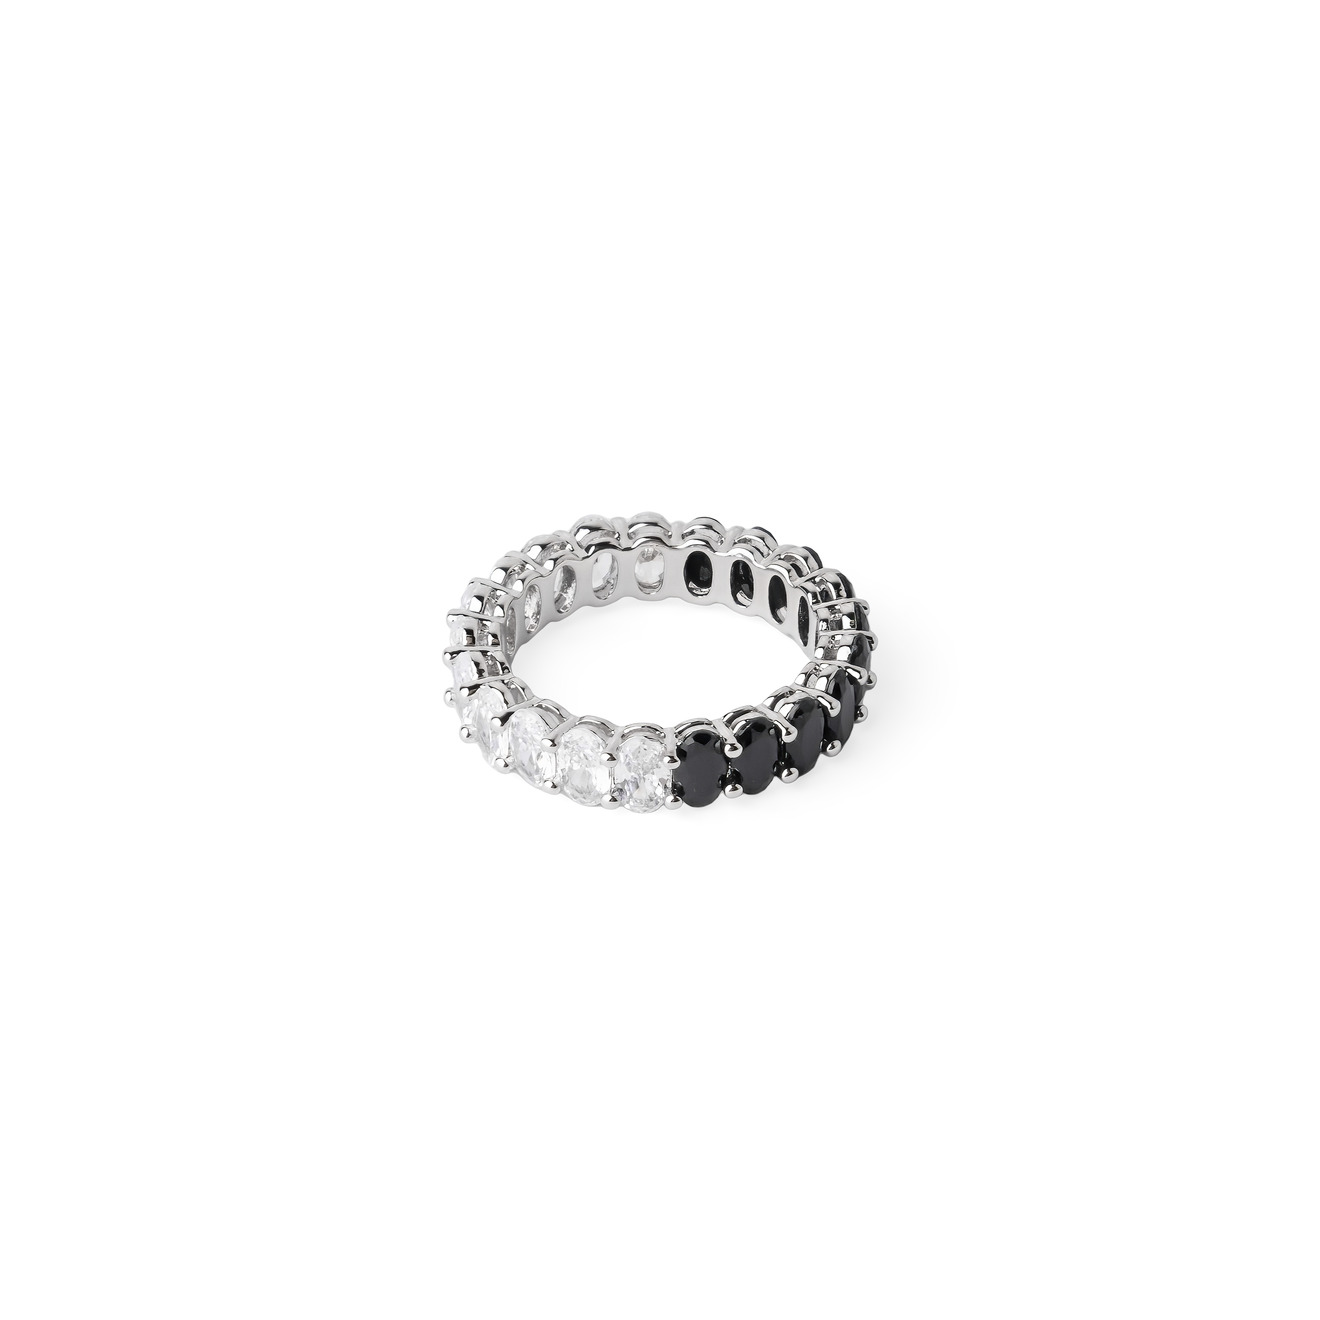 Herald Percy Серебристое кольцо с черными и белыми кристаллами herald percy серебристое кольцо из сердец с белыми и черными кристаллами